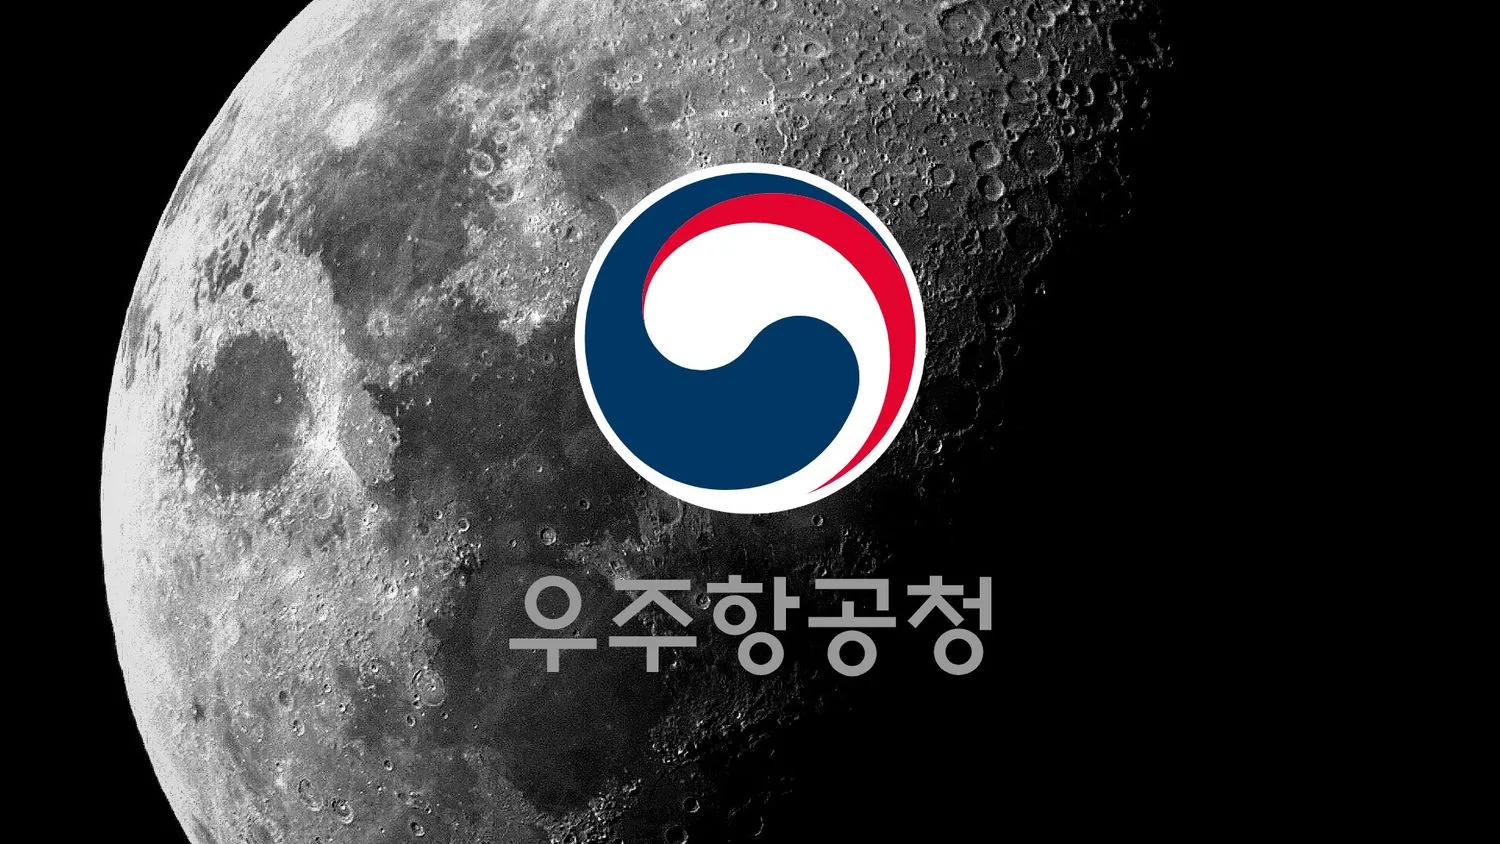 Mehr über den Artikel erfahren Südkorea gründet neue Raumfahrtagentur KASA und nimmt Mond und Mars ins Visier